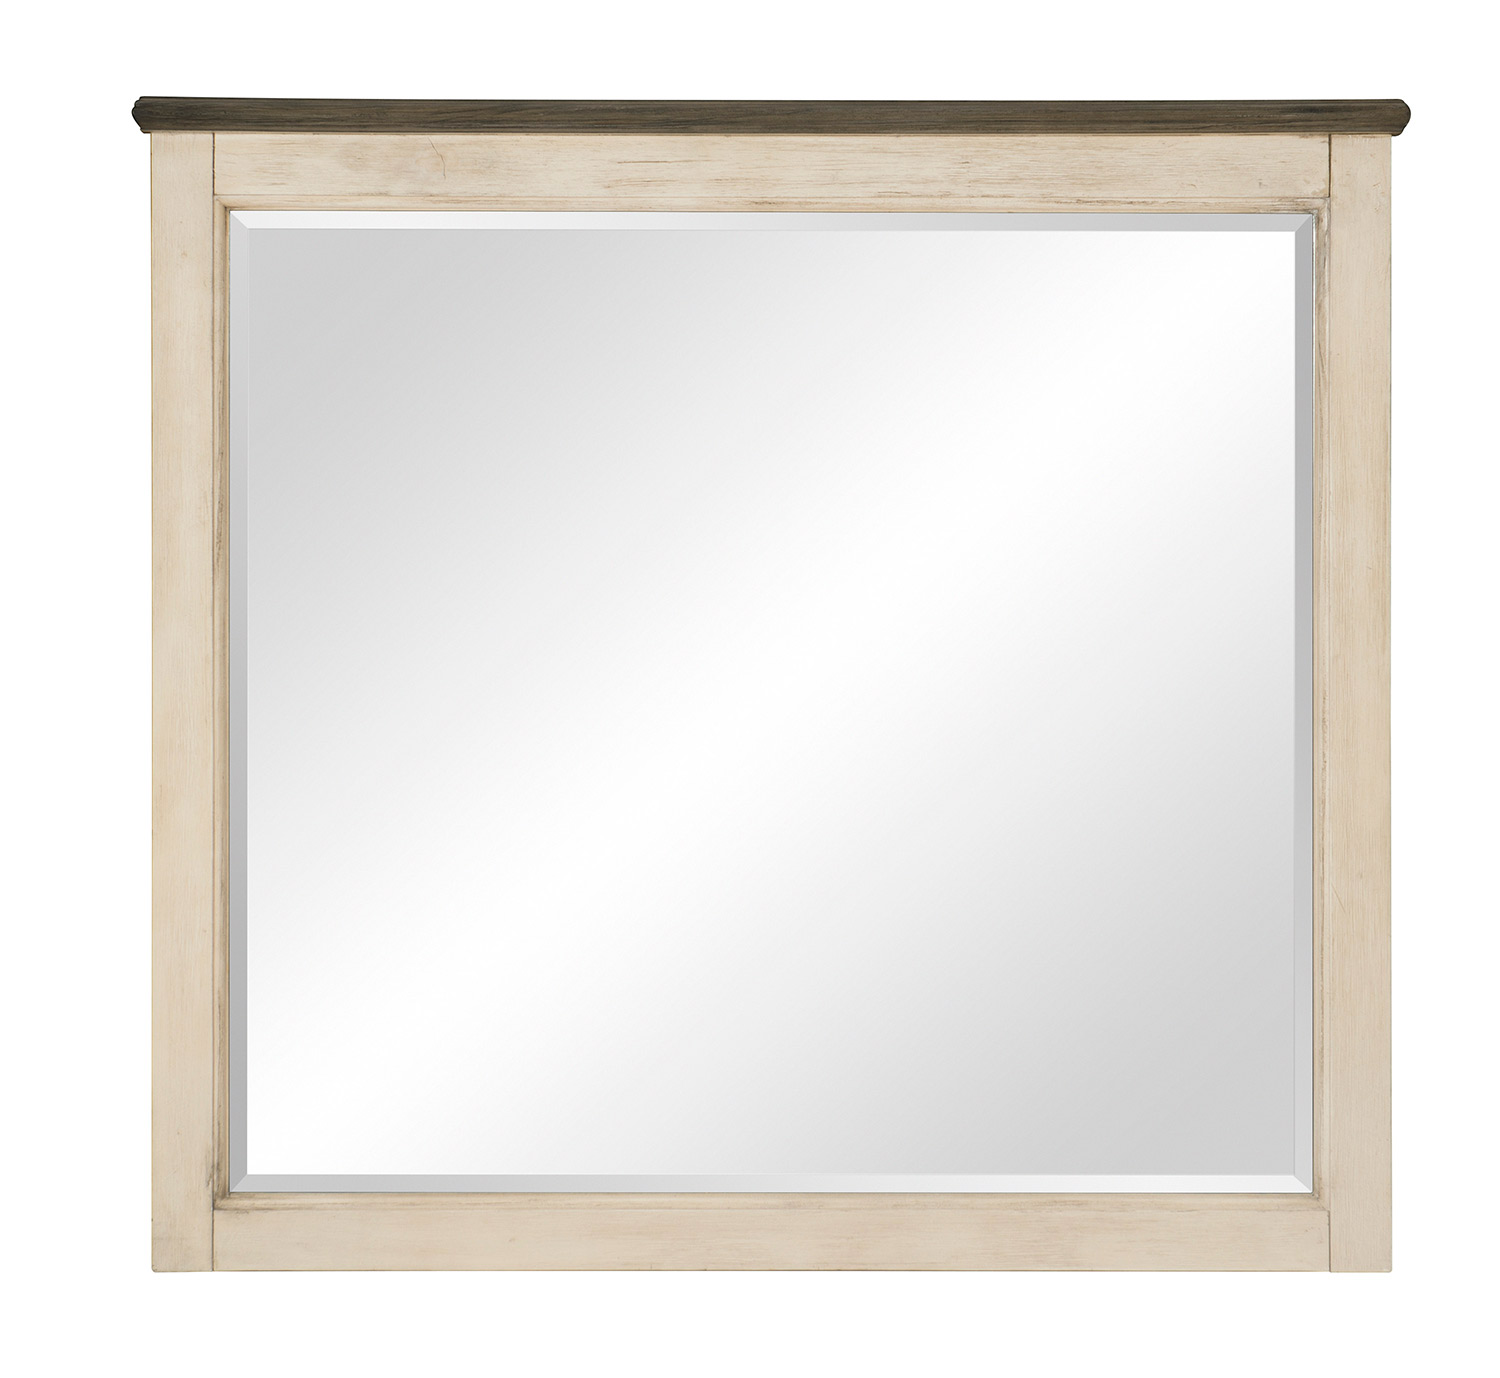 Homelegance Weaver Mirror - Antique White